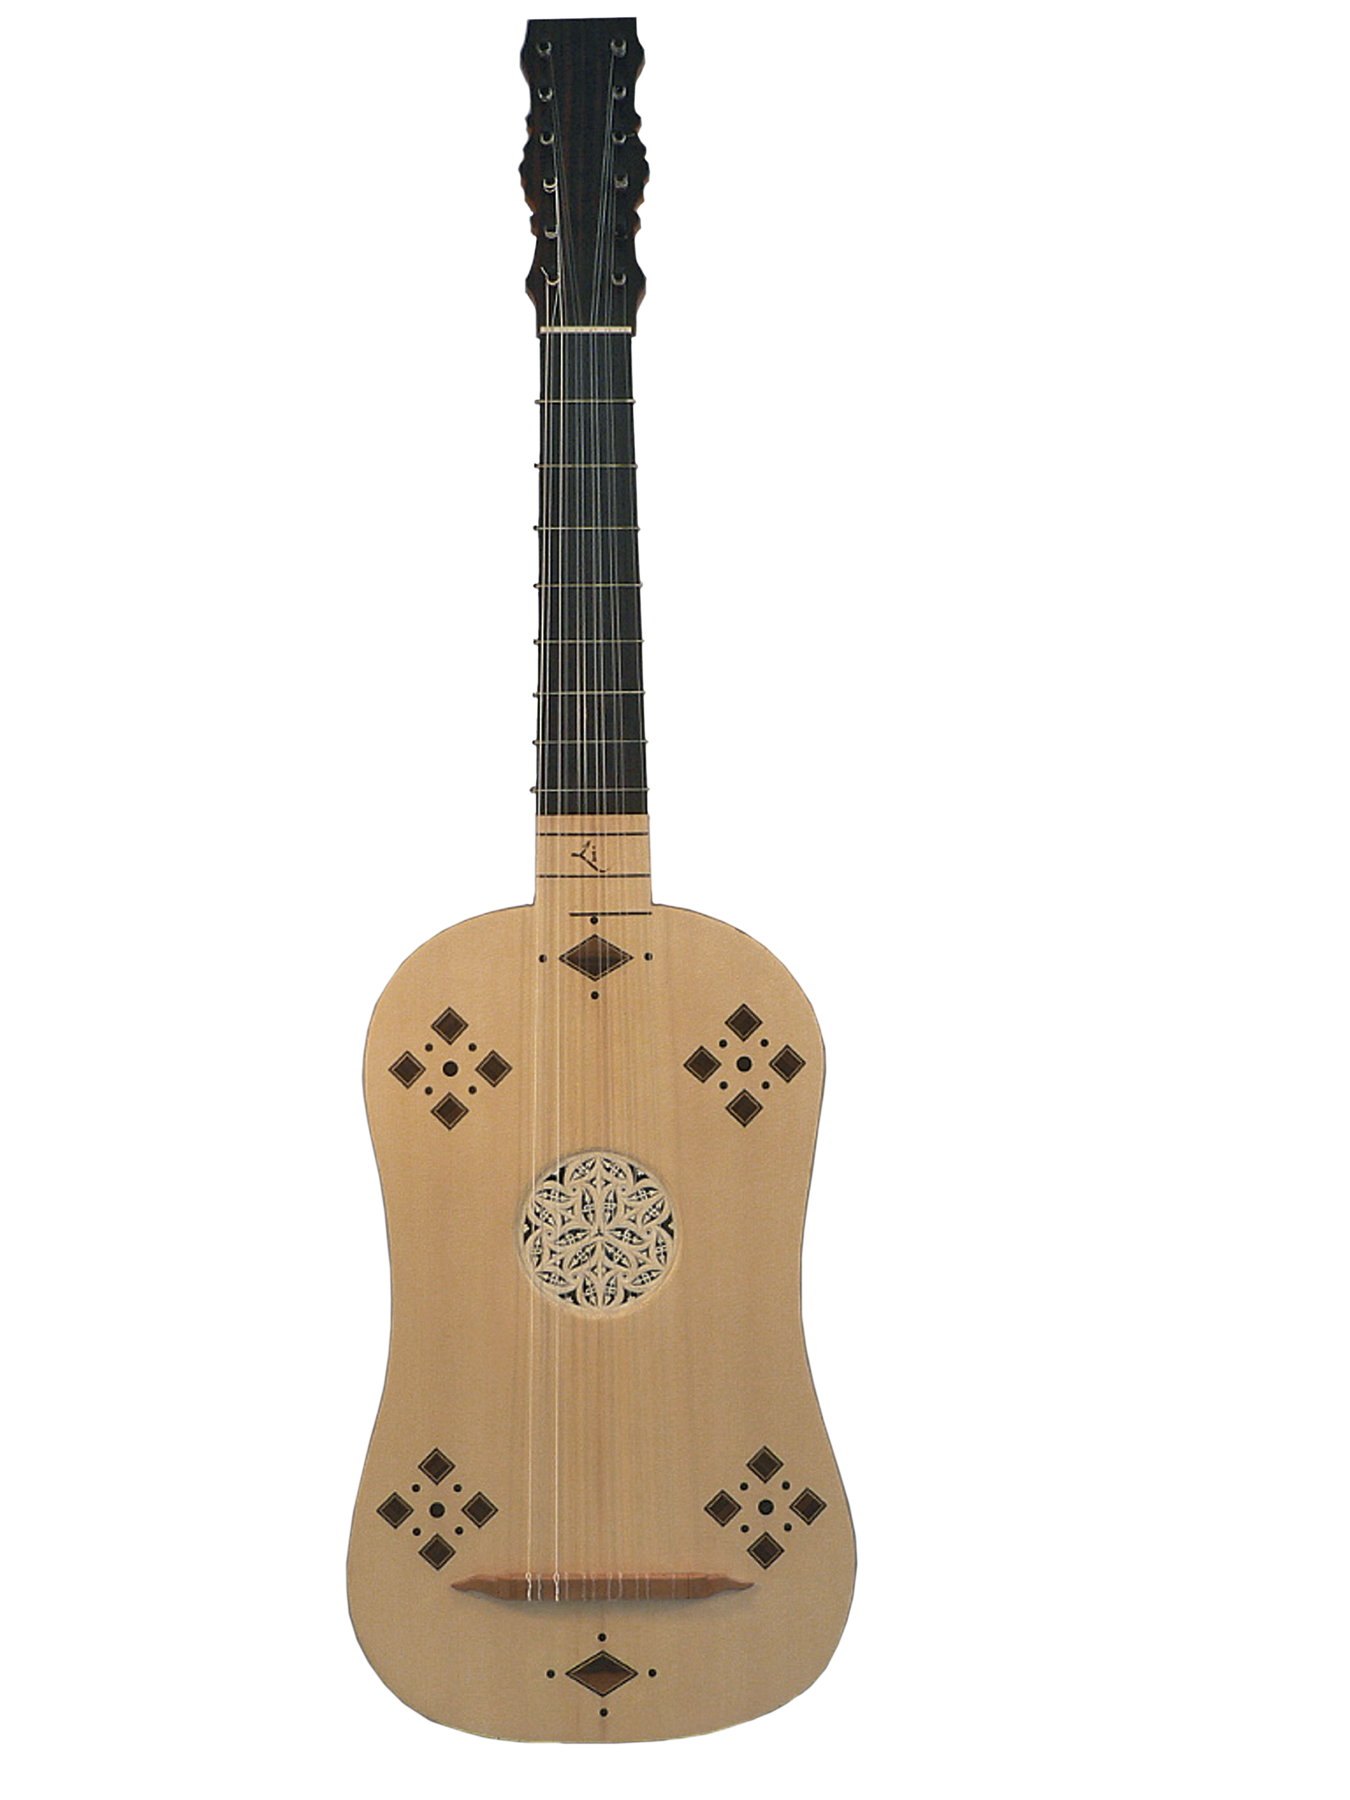 Fotografia. Instrumento musical que lembra um violão. O corpo é de madeira clara e o braço é preto. Há detalhes geométricos feitos na madeira do corpo do instrumento.